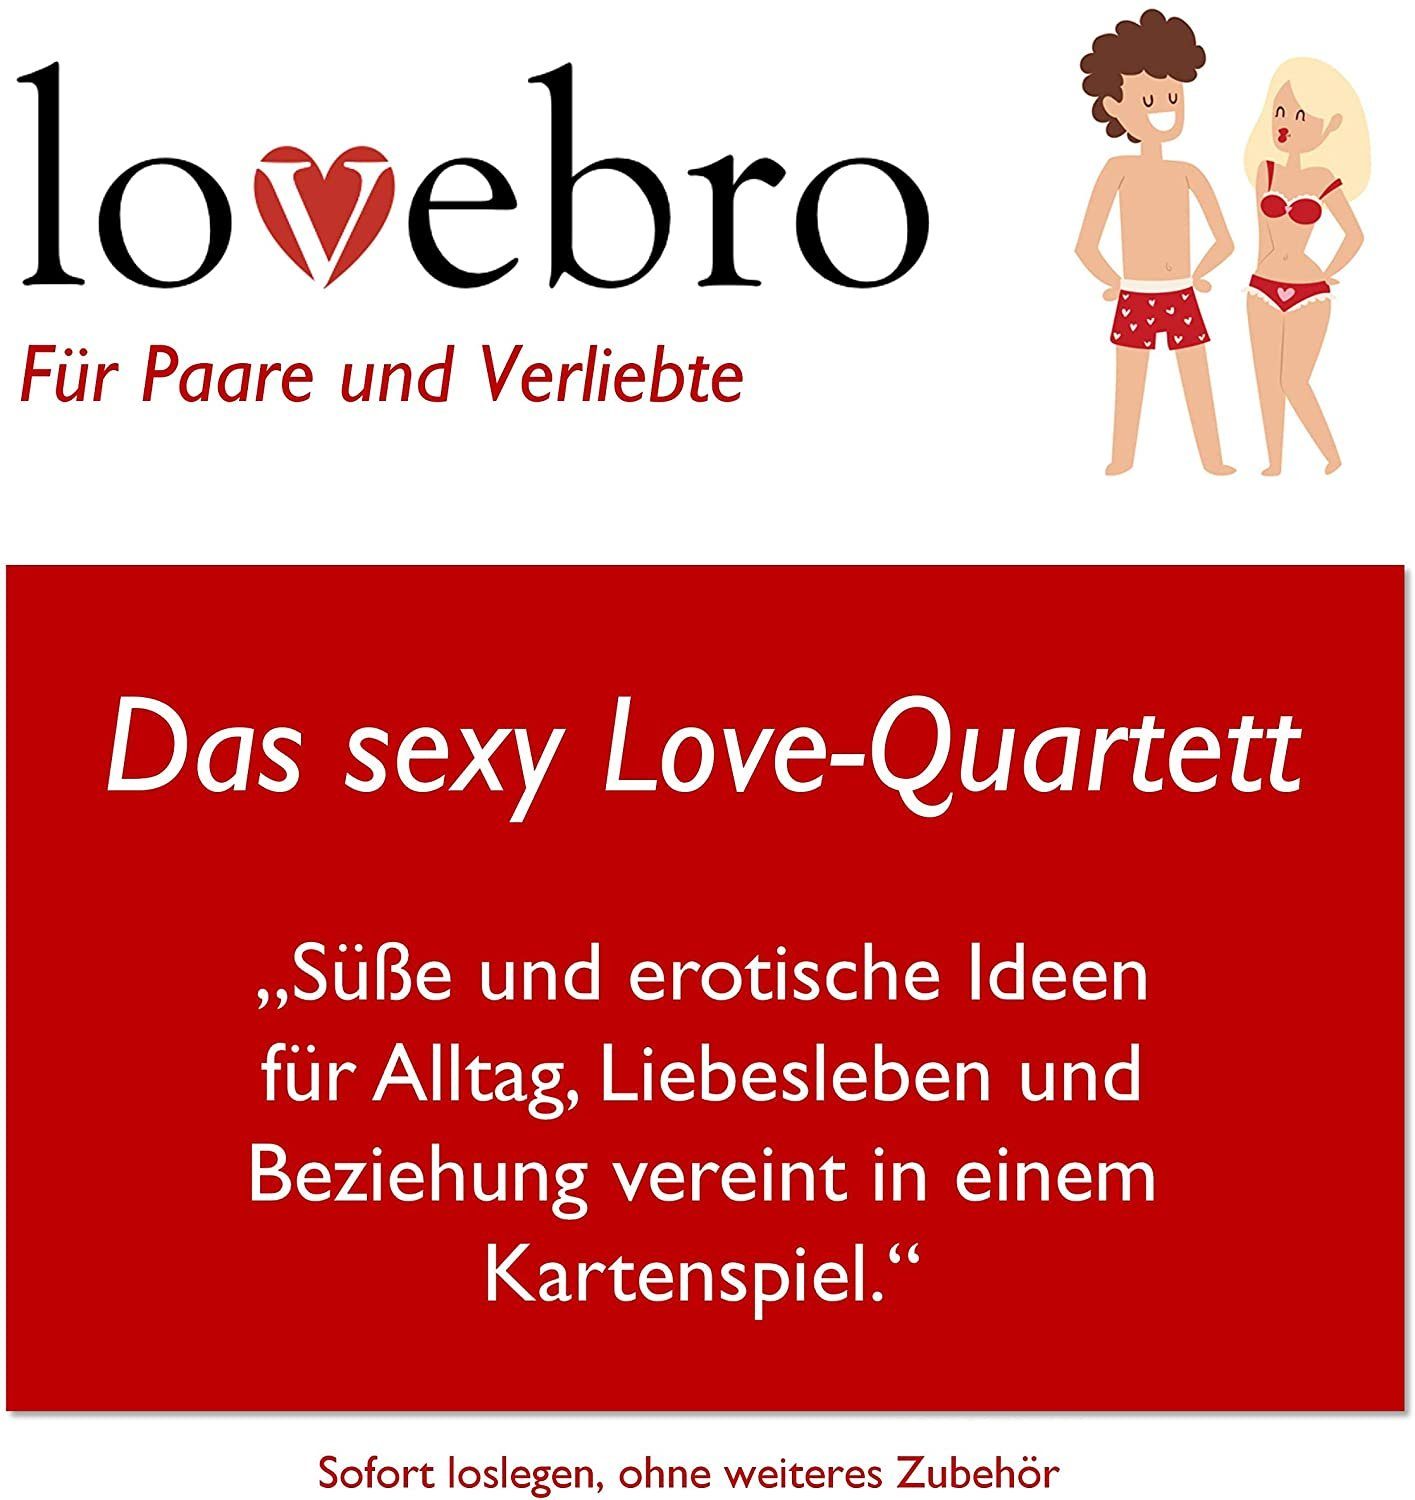 Love-Quartett, sexy Spaß lovebro Liebes Paare Das für Erotik-Spiel, Erotik Spielzeug,